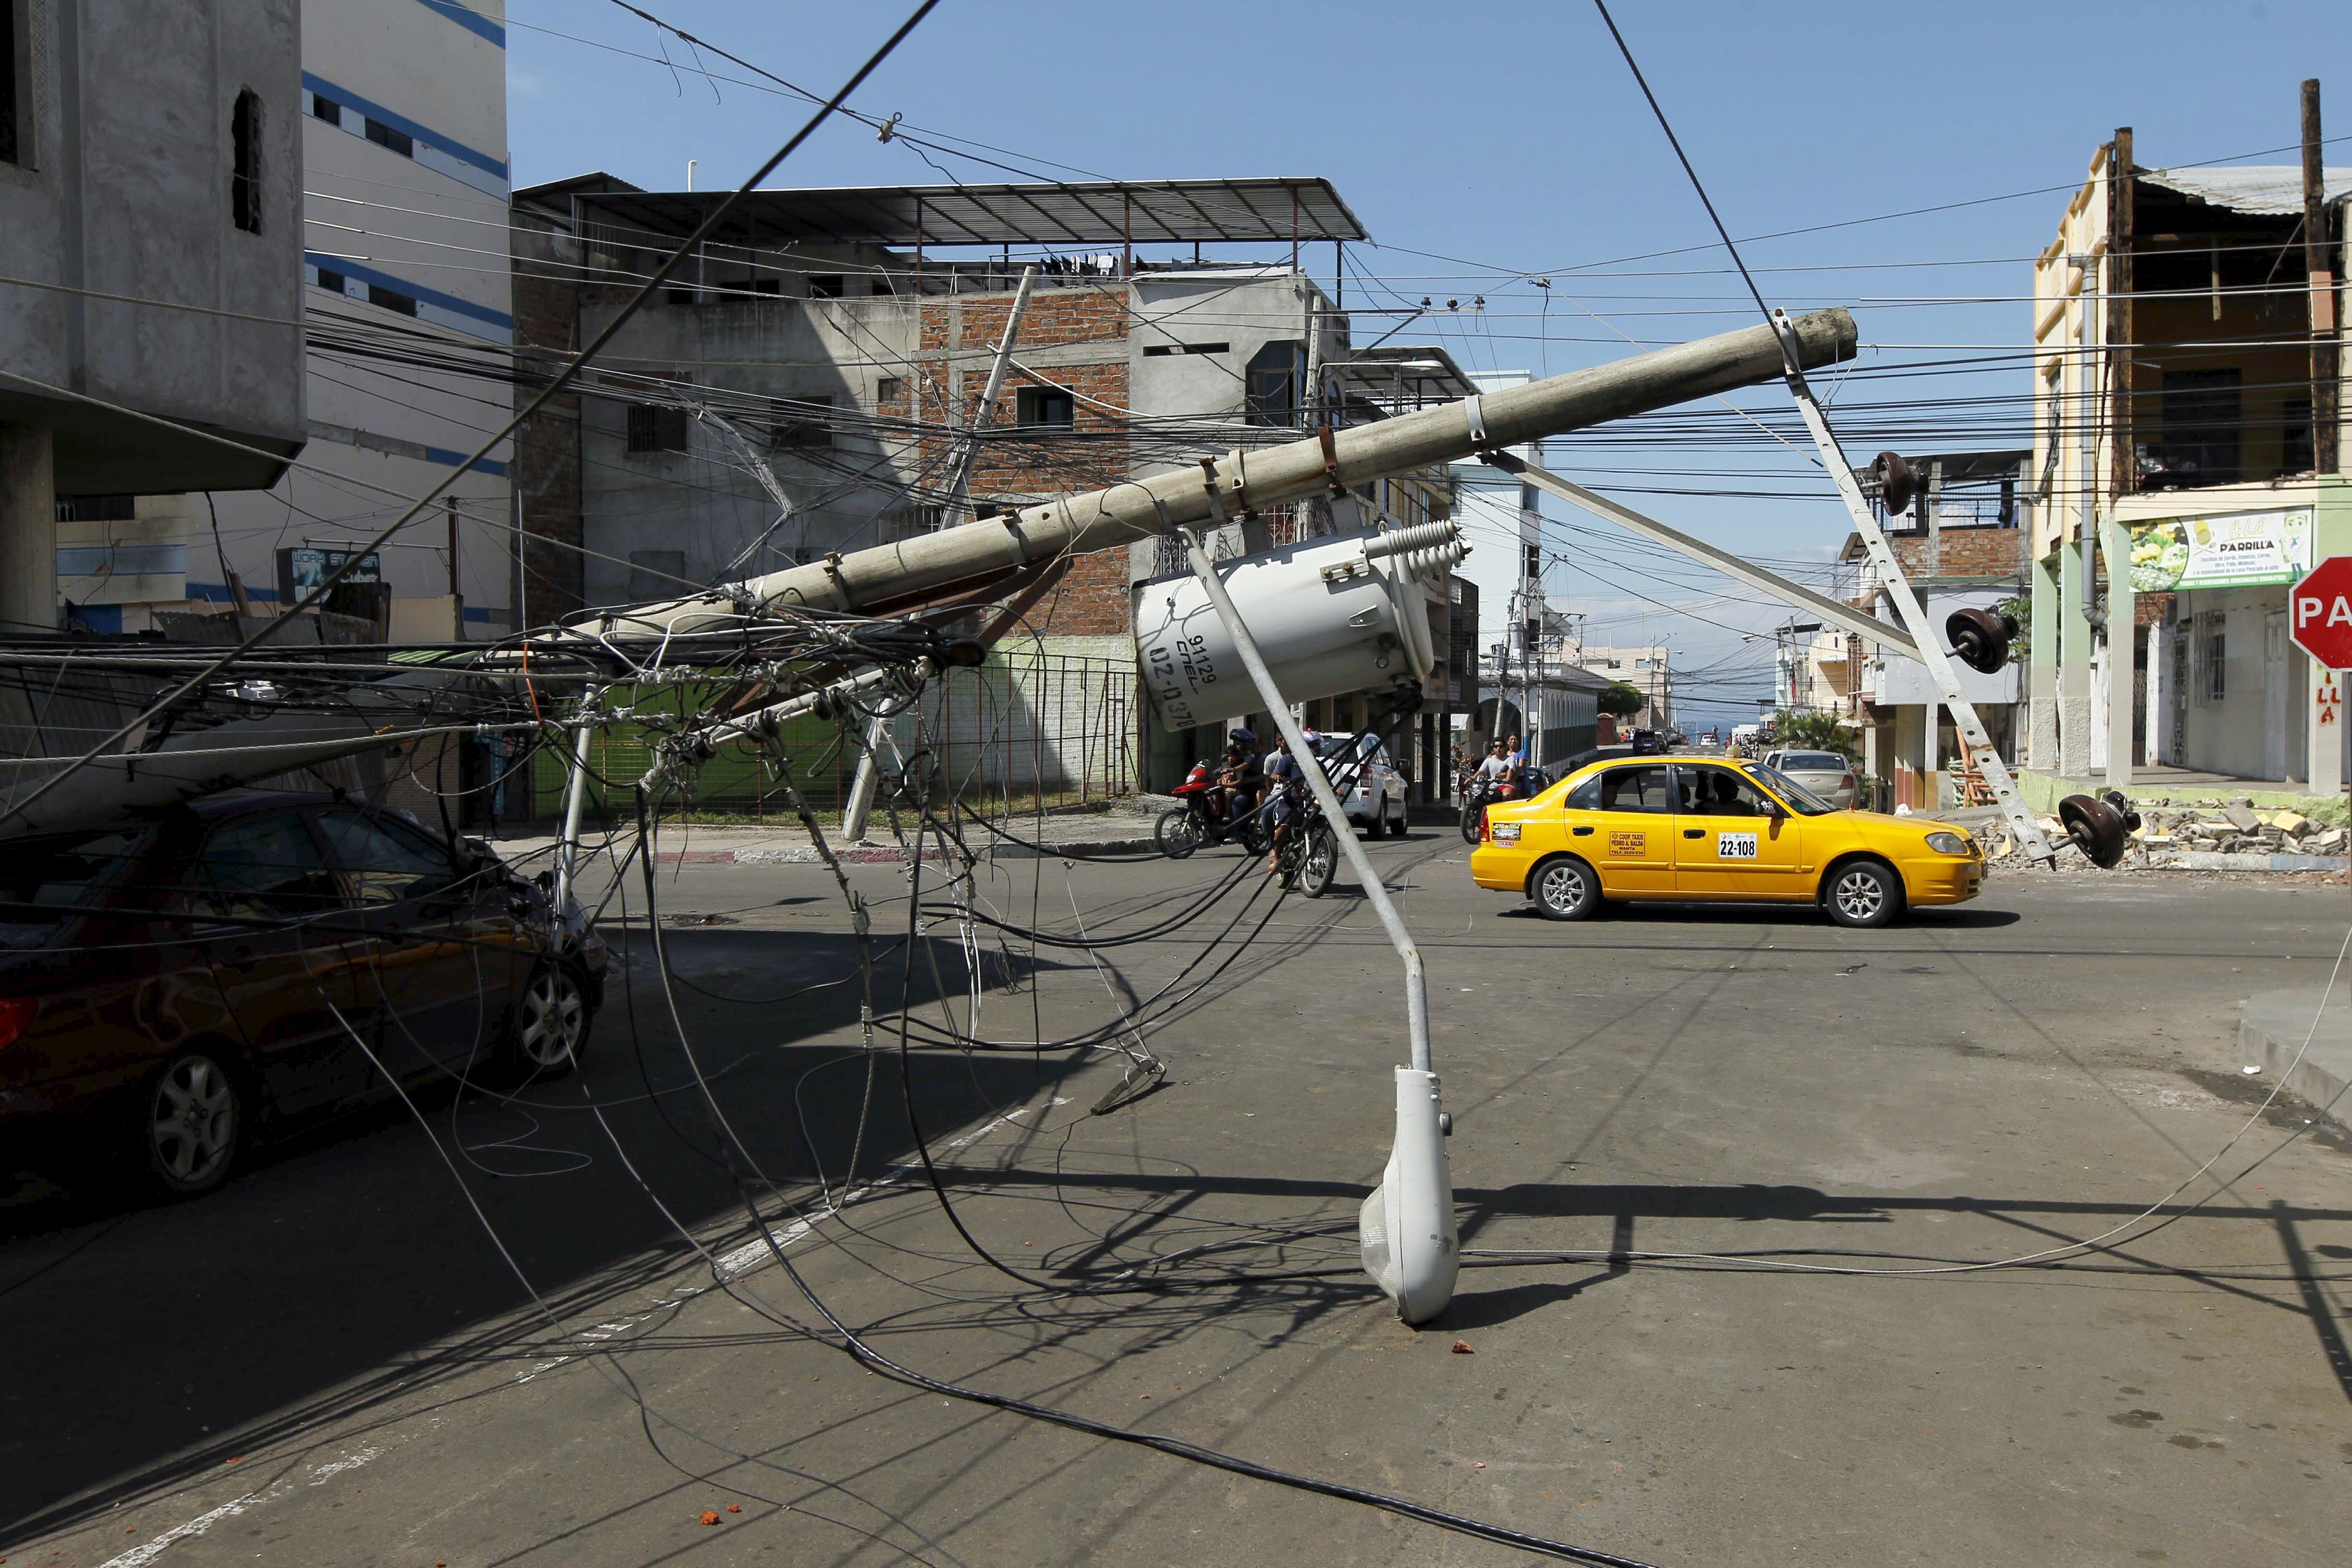 El tendido eléctrico quedó atravesado en las calles de Ecuador tras el terremoto.